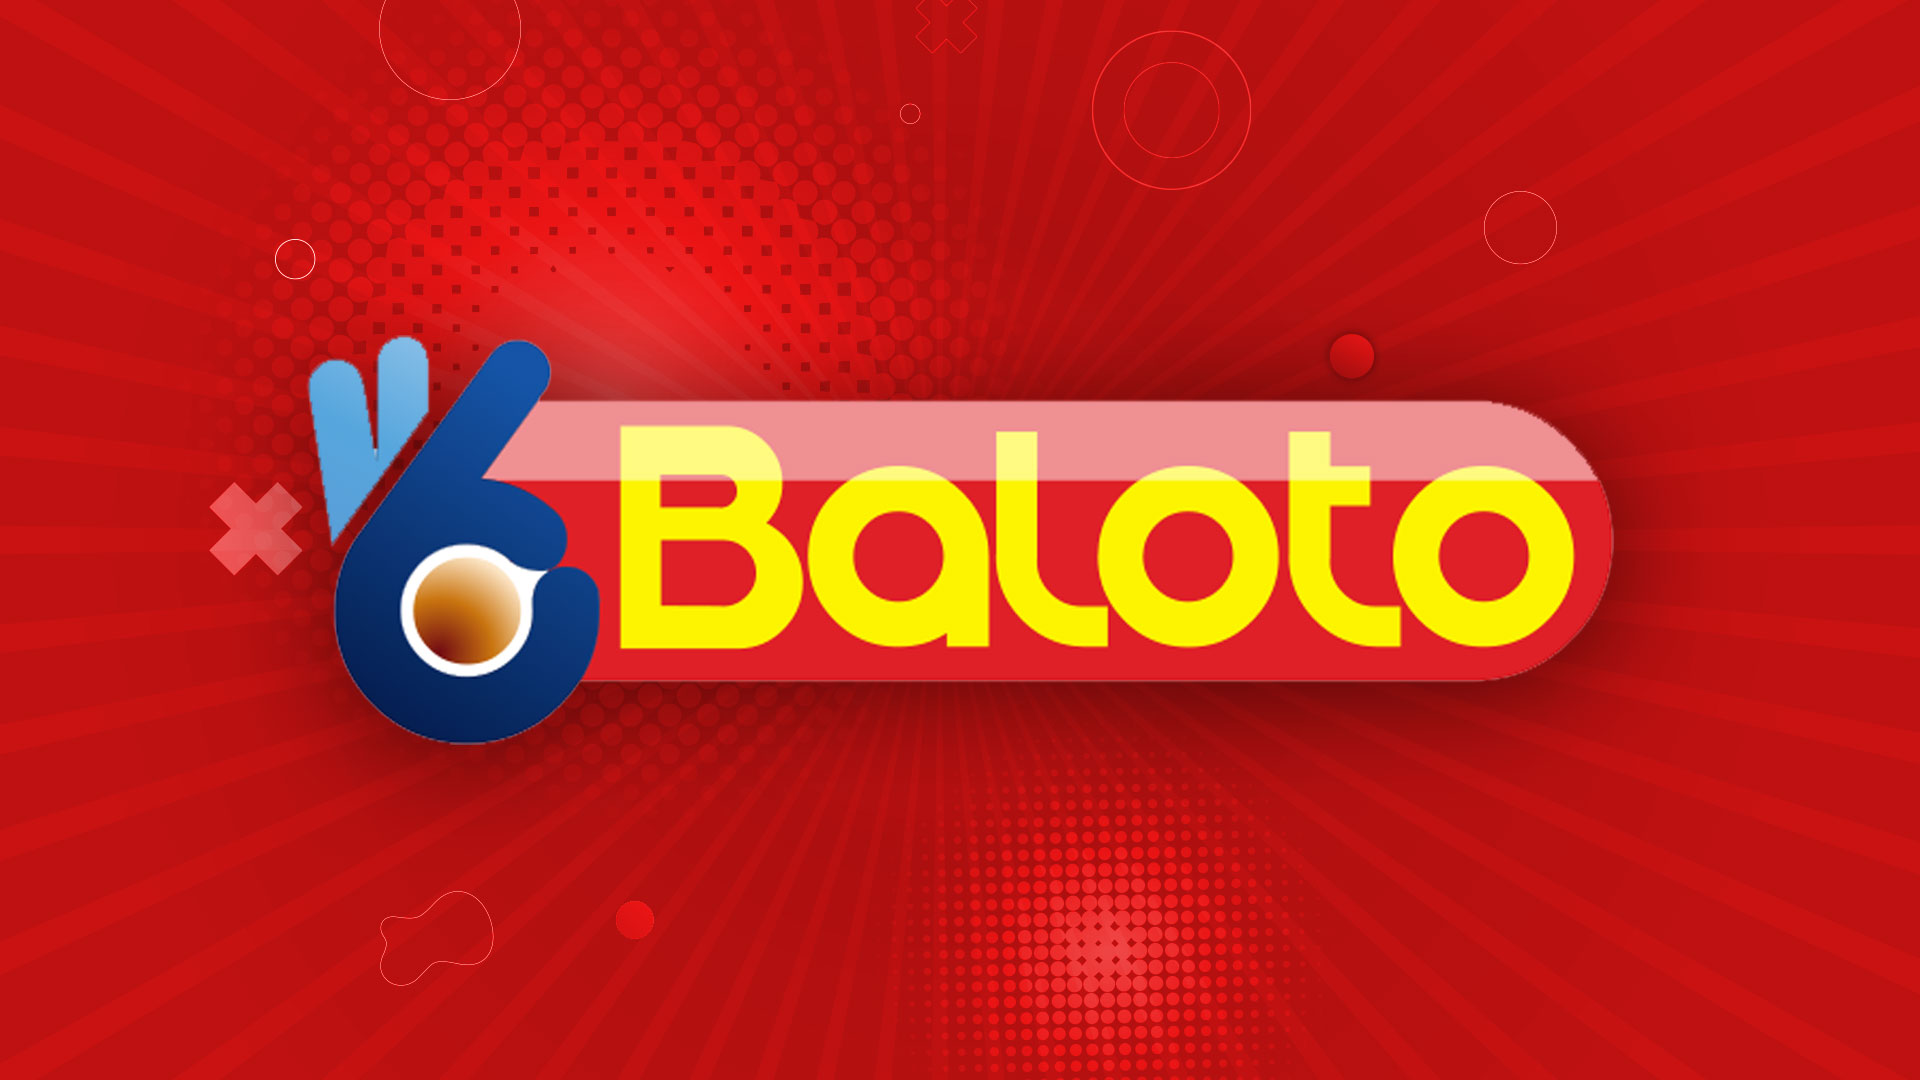 Resultados del Baloto: ganadores y números premiados del miércoles 7 de junio